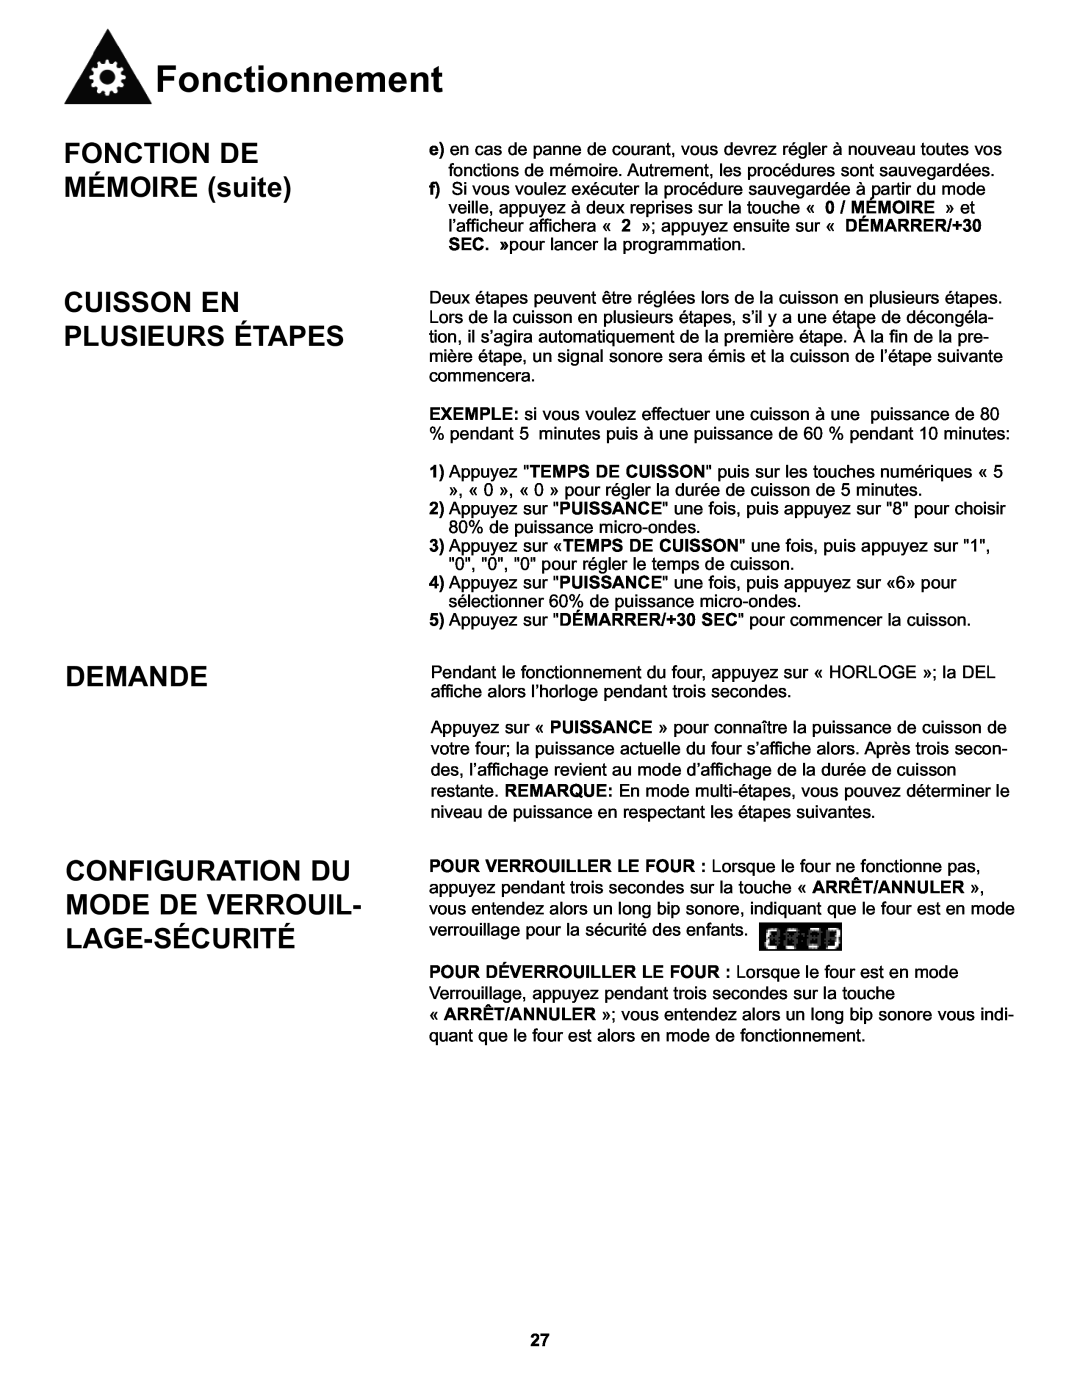 Danby DMW7700WDB manual FONCTION DE MÉMOIRE suite, Cuisson En Plusieurs Étapes Demande, Fonctionnement 